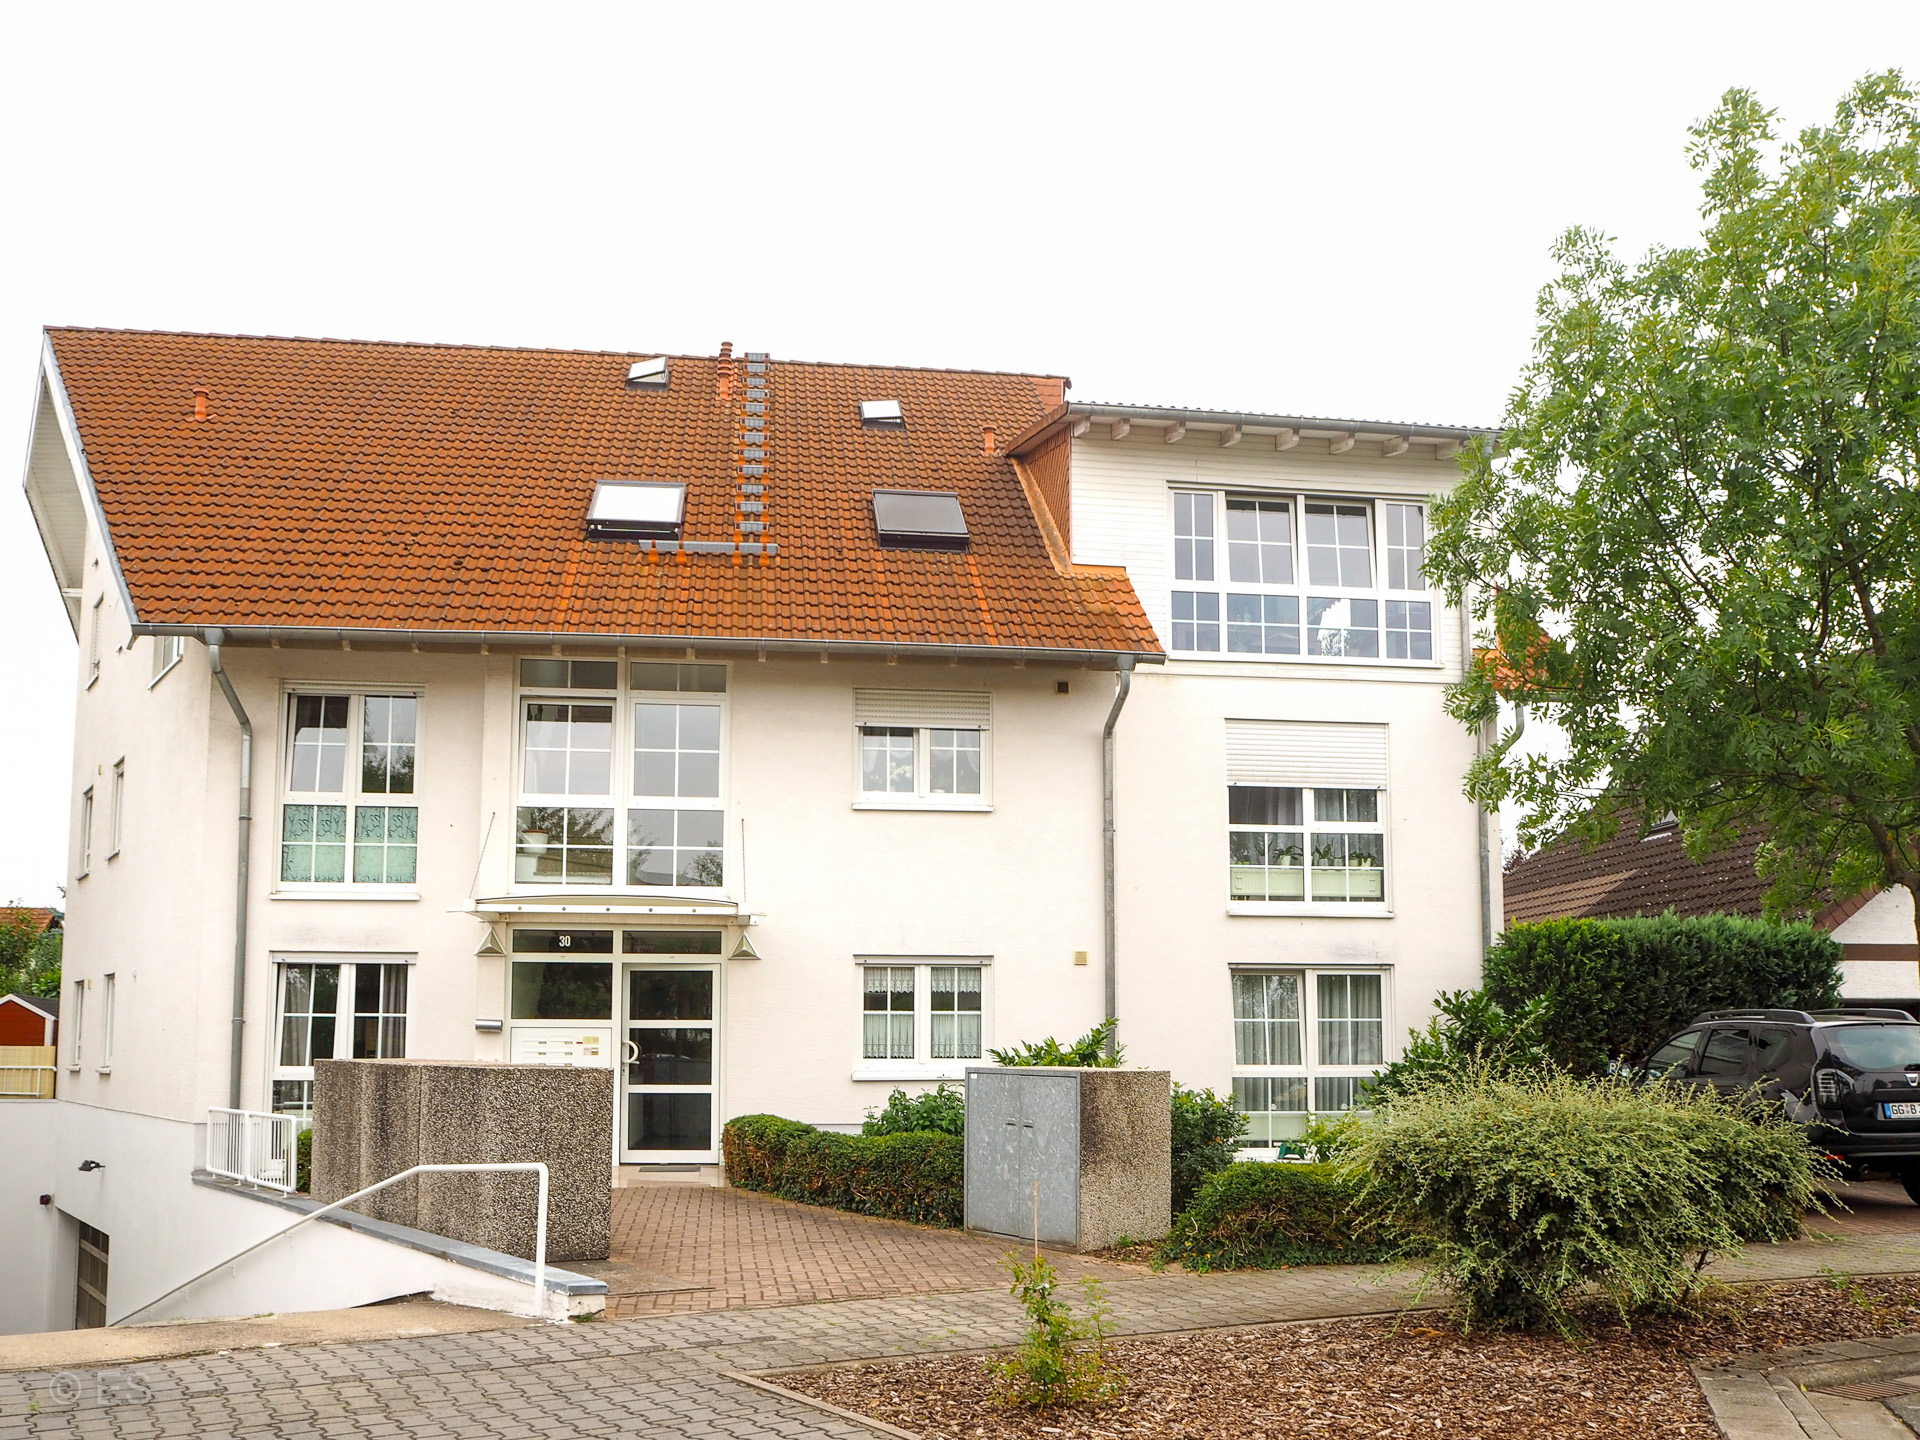 Objekt 849: Gehobene 3-Zimmer-Wohnung mit zwei Balkonen im Maisonettestil in vornehmer Wohngegend von Gernsheim